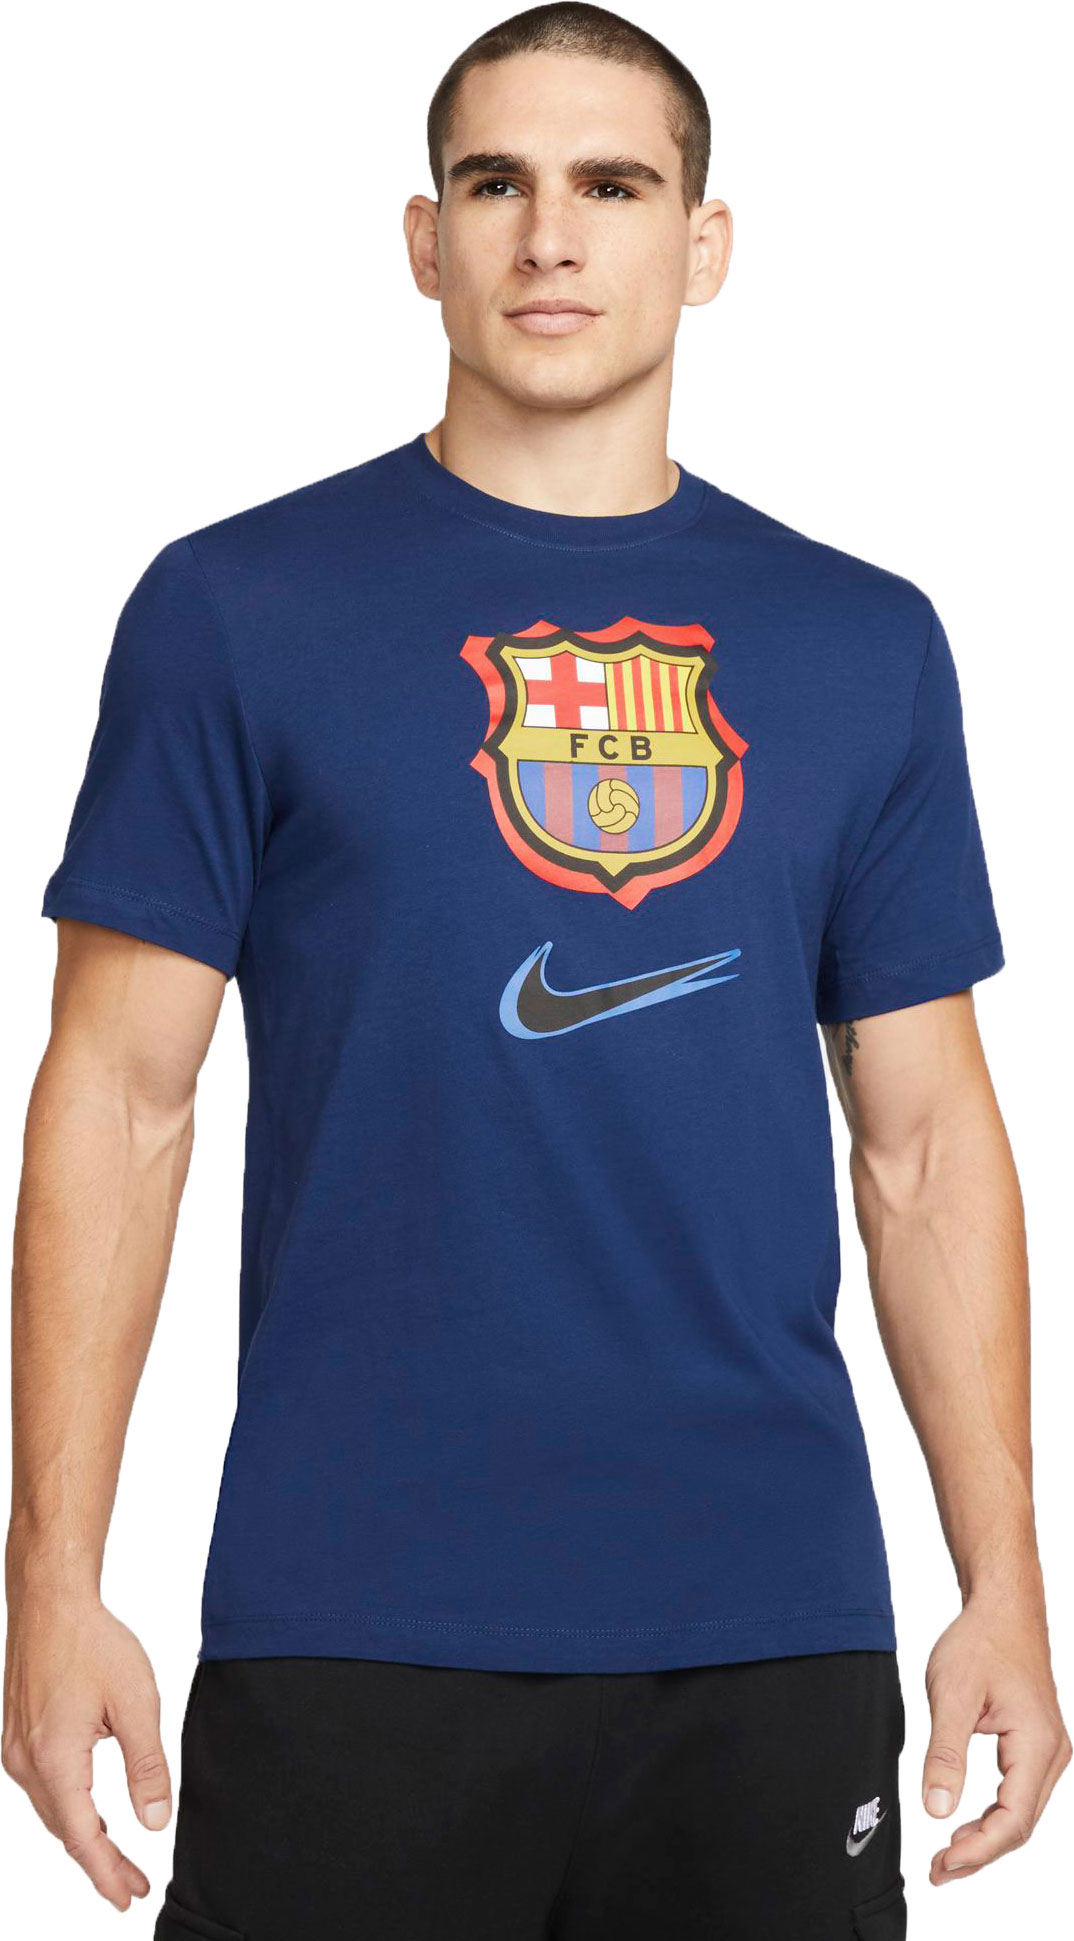 Men’s football T-shirt